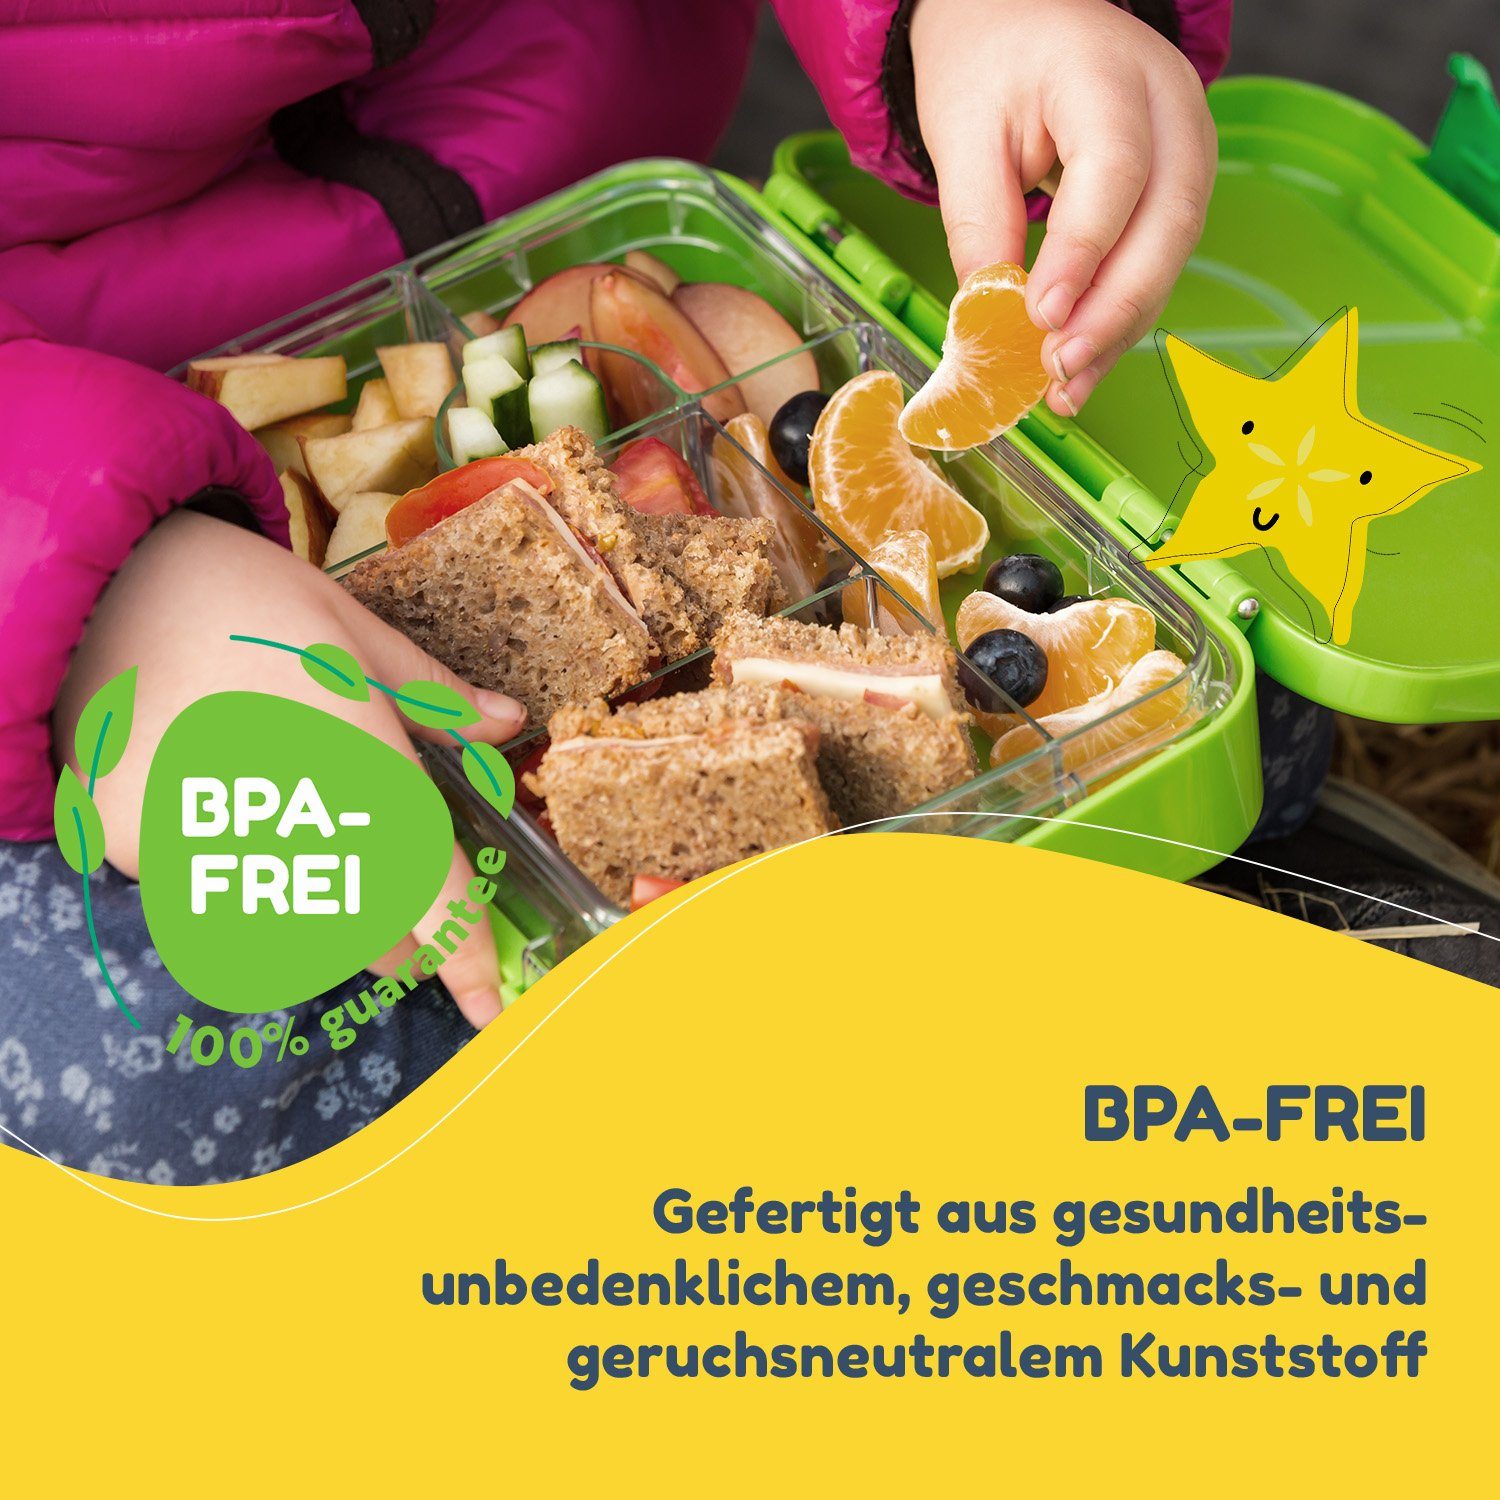 junior Klarstein Grün Kunststoff schmatzfatz Lunchbox, Frischhaltedose